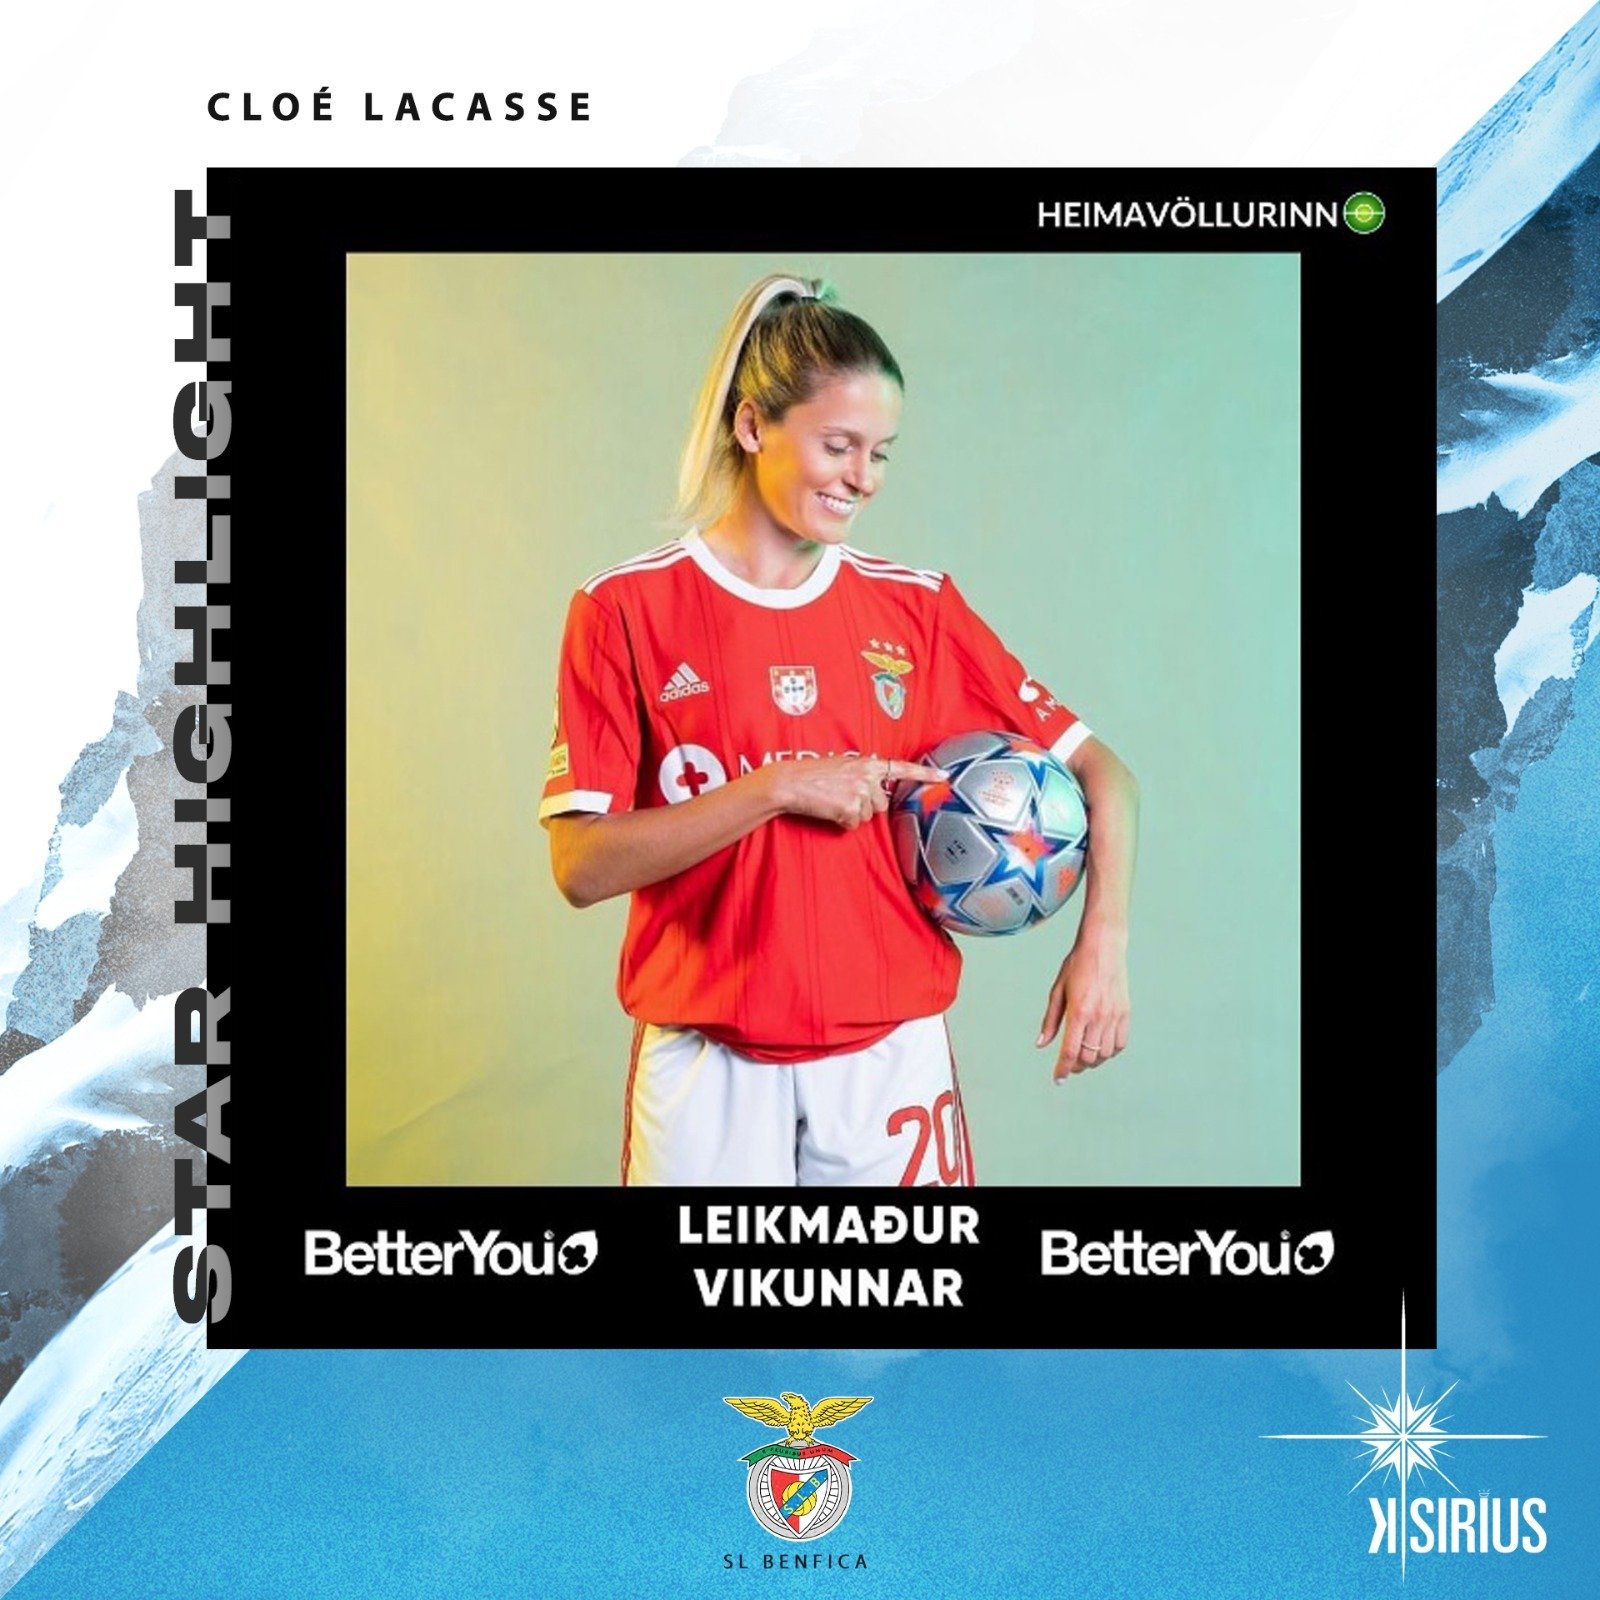 Star Highlight: Cloé Lacasse (SL Benfica)